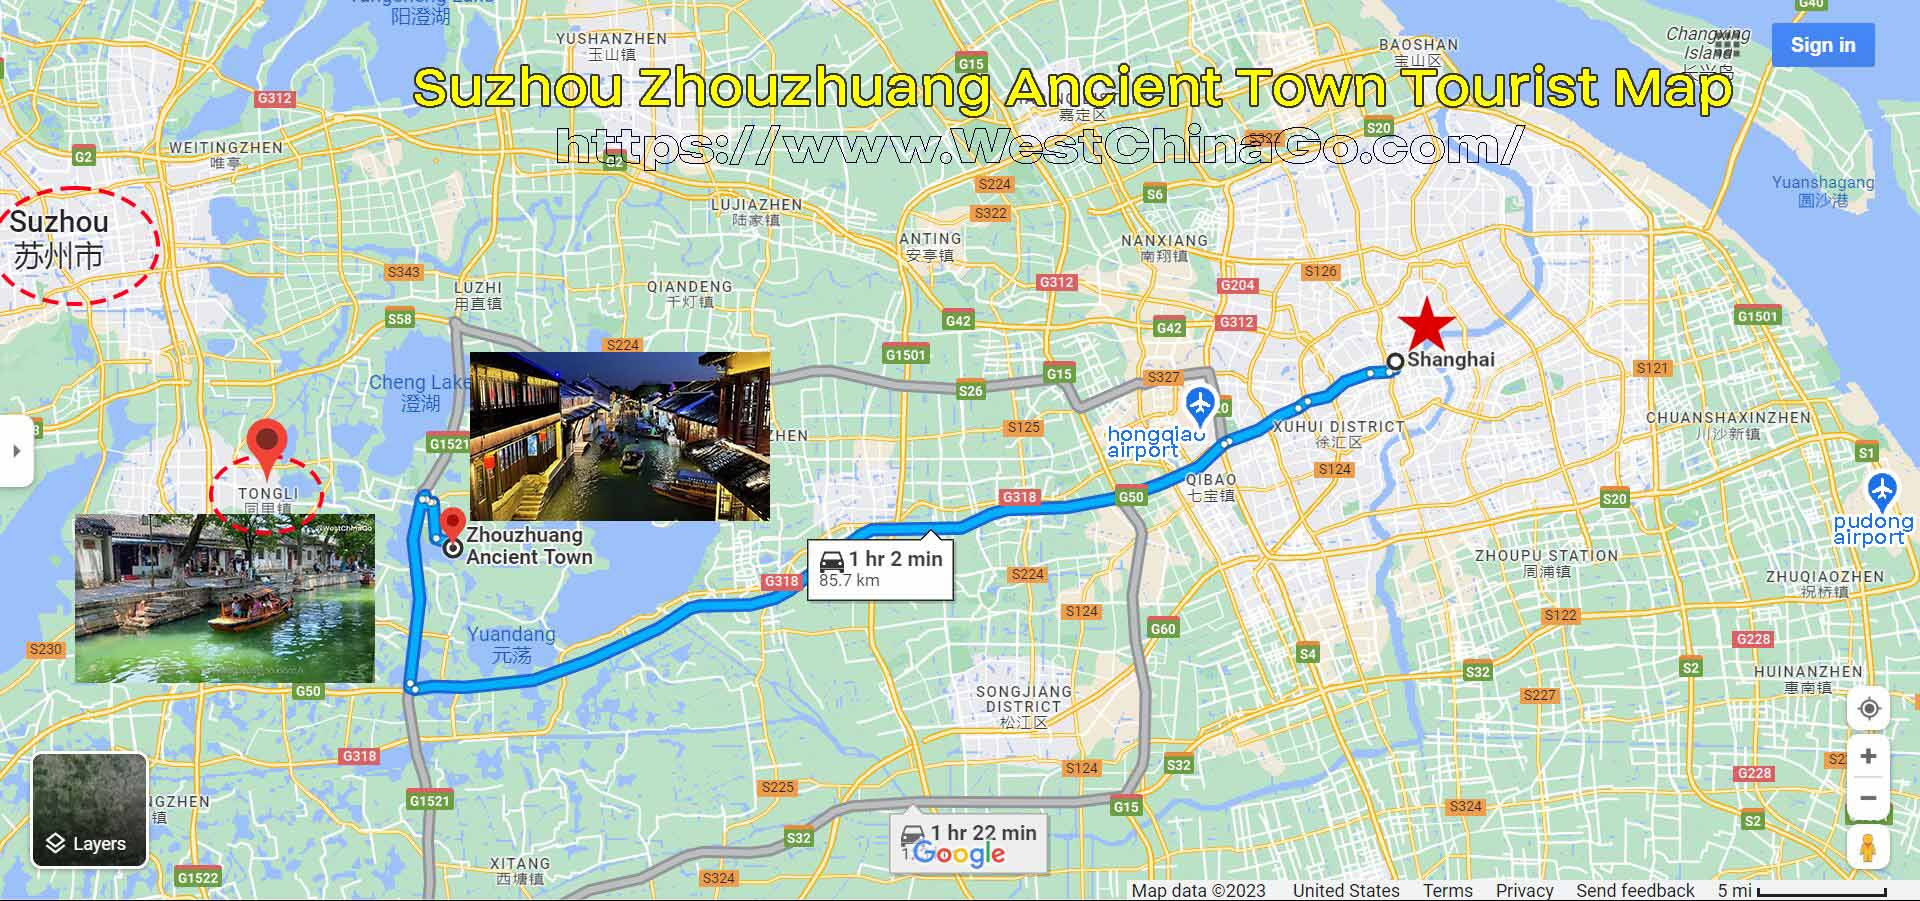 Suzhou Zhouzhuang Ancient Town Tourist Map